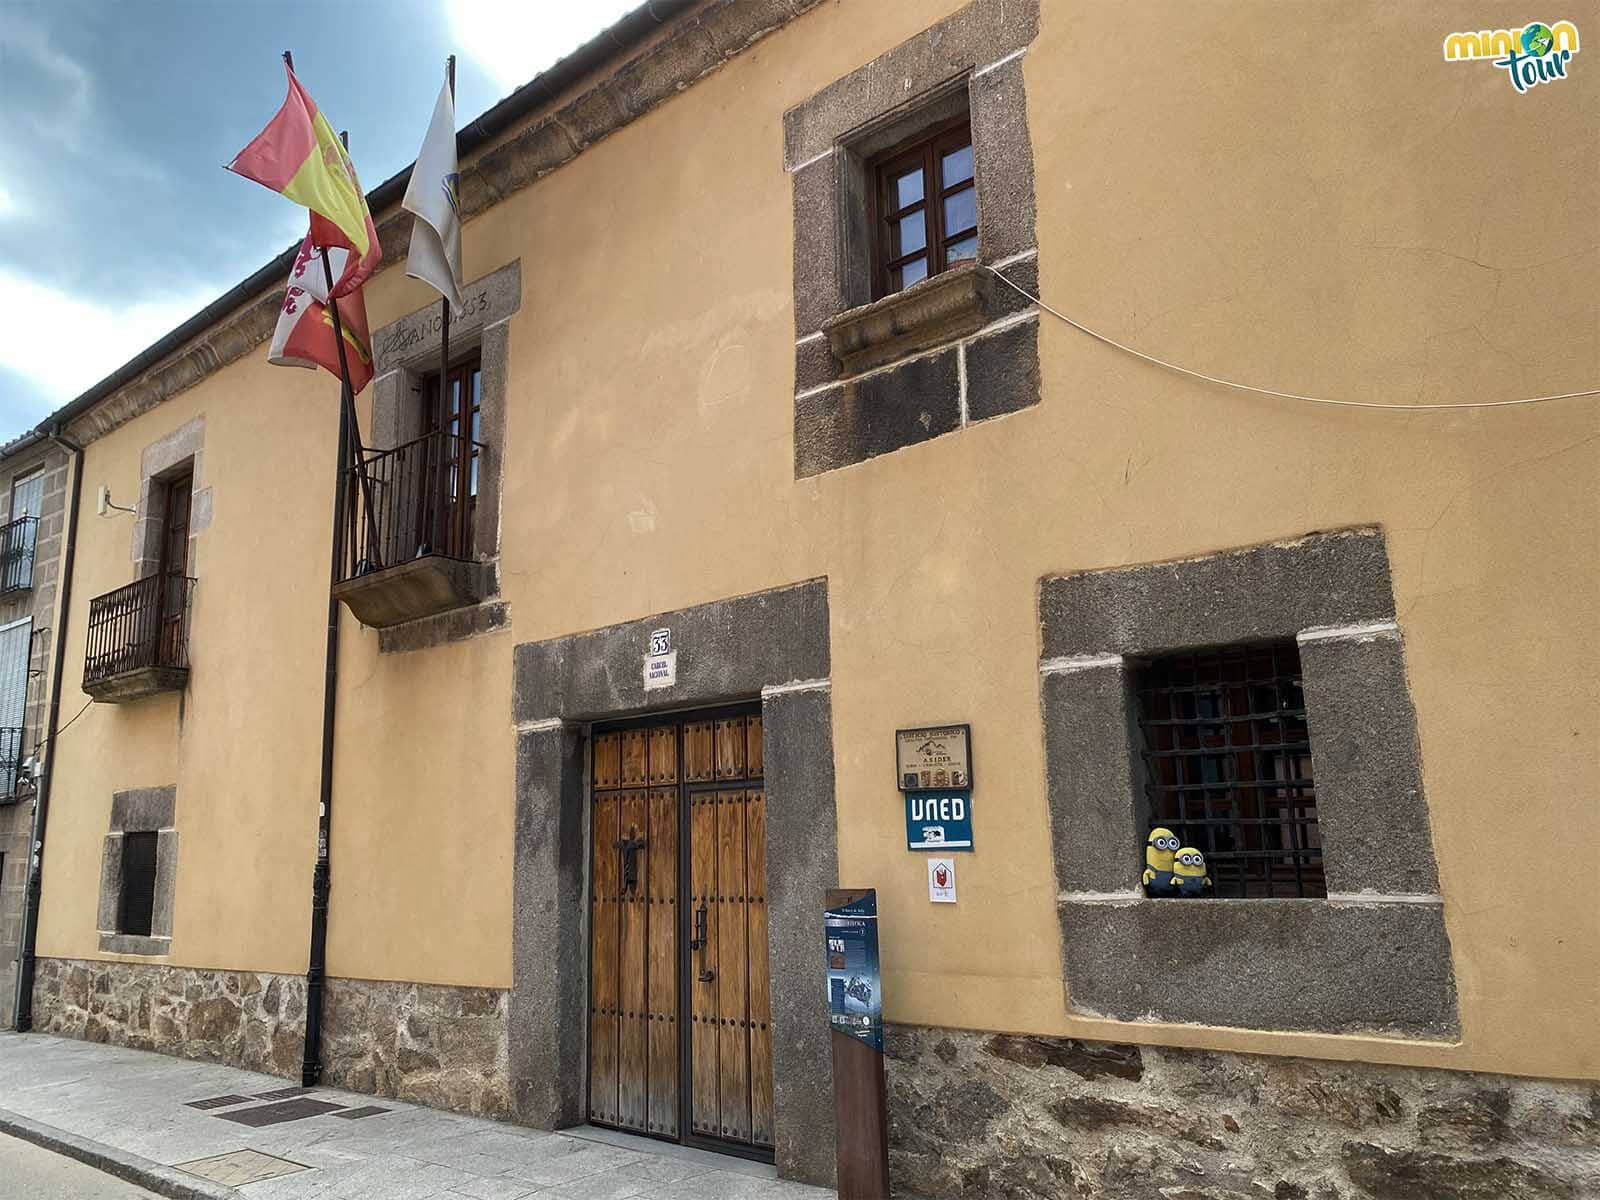 La antigua cárcel es otra de las cosas que ver en El Barco de Ávila